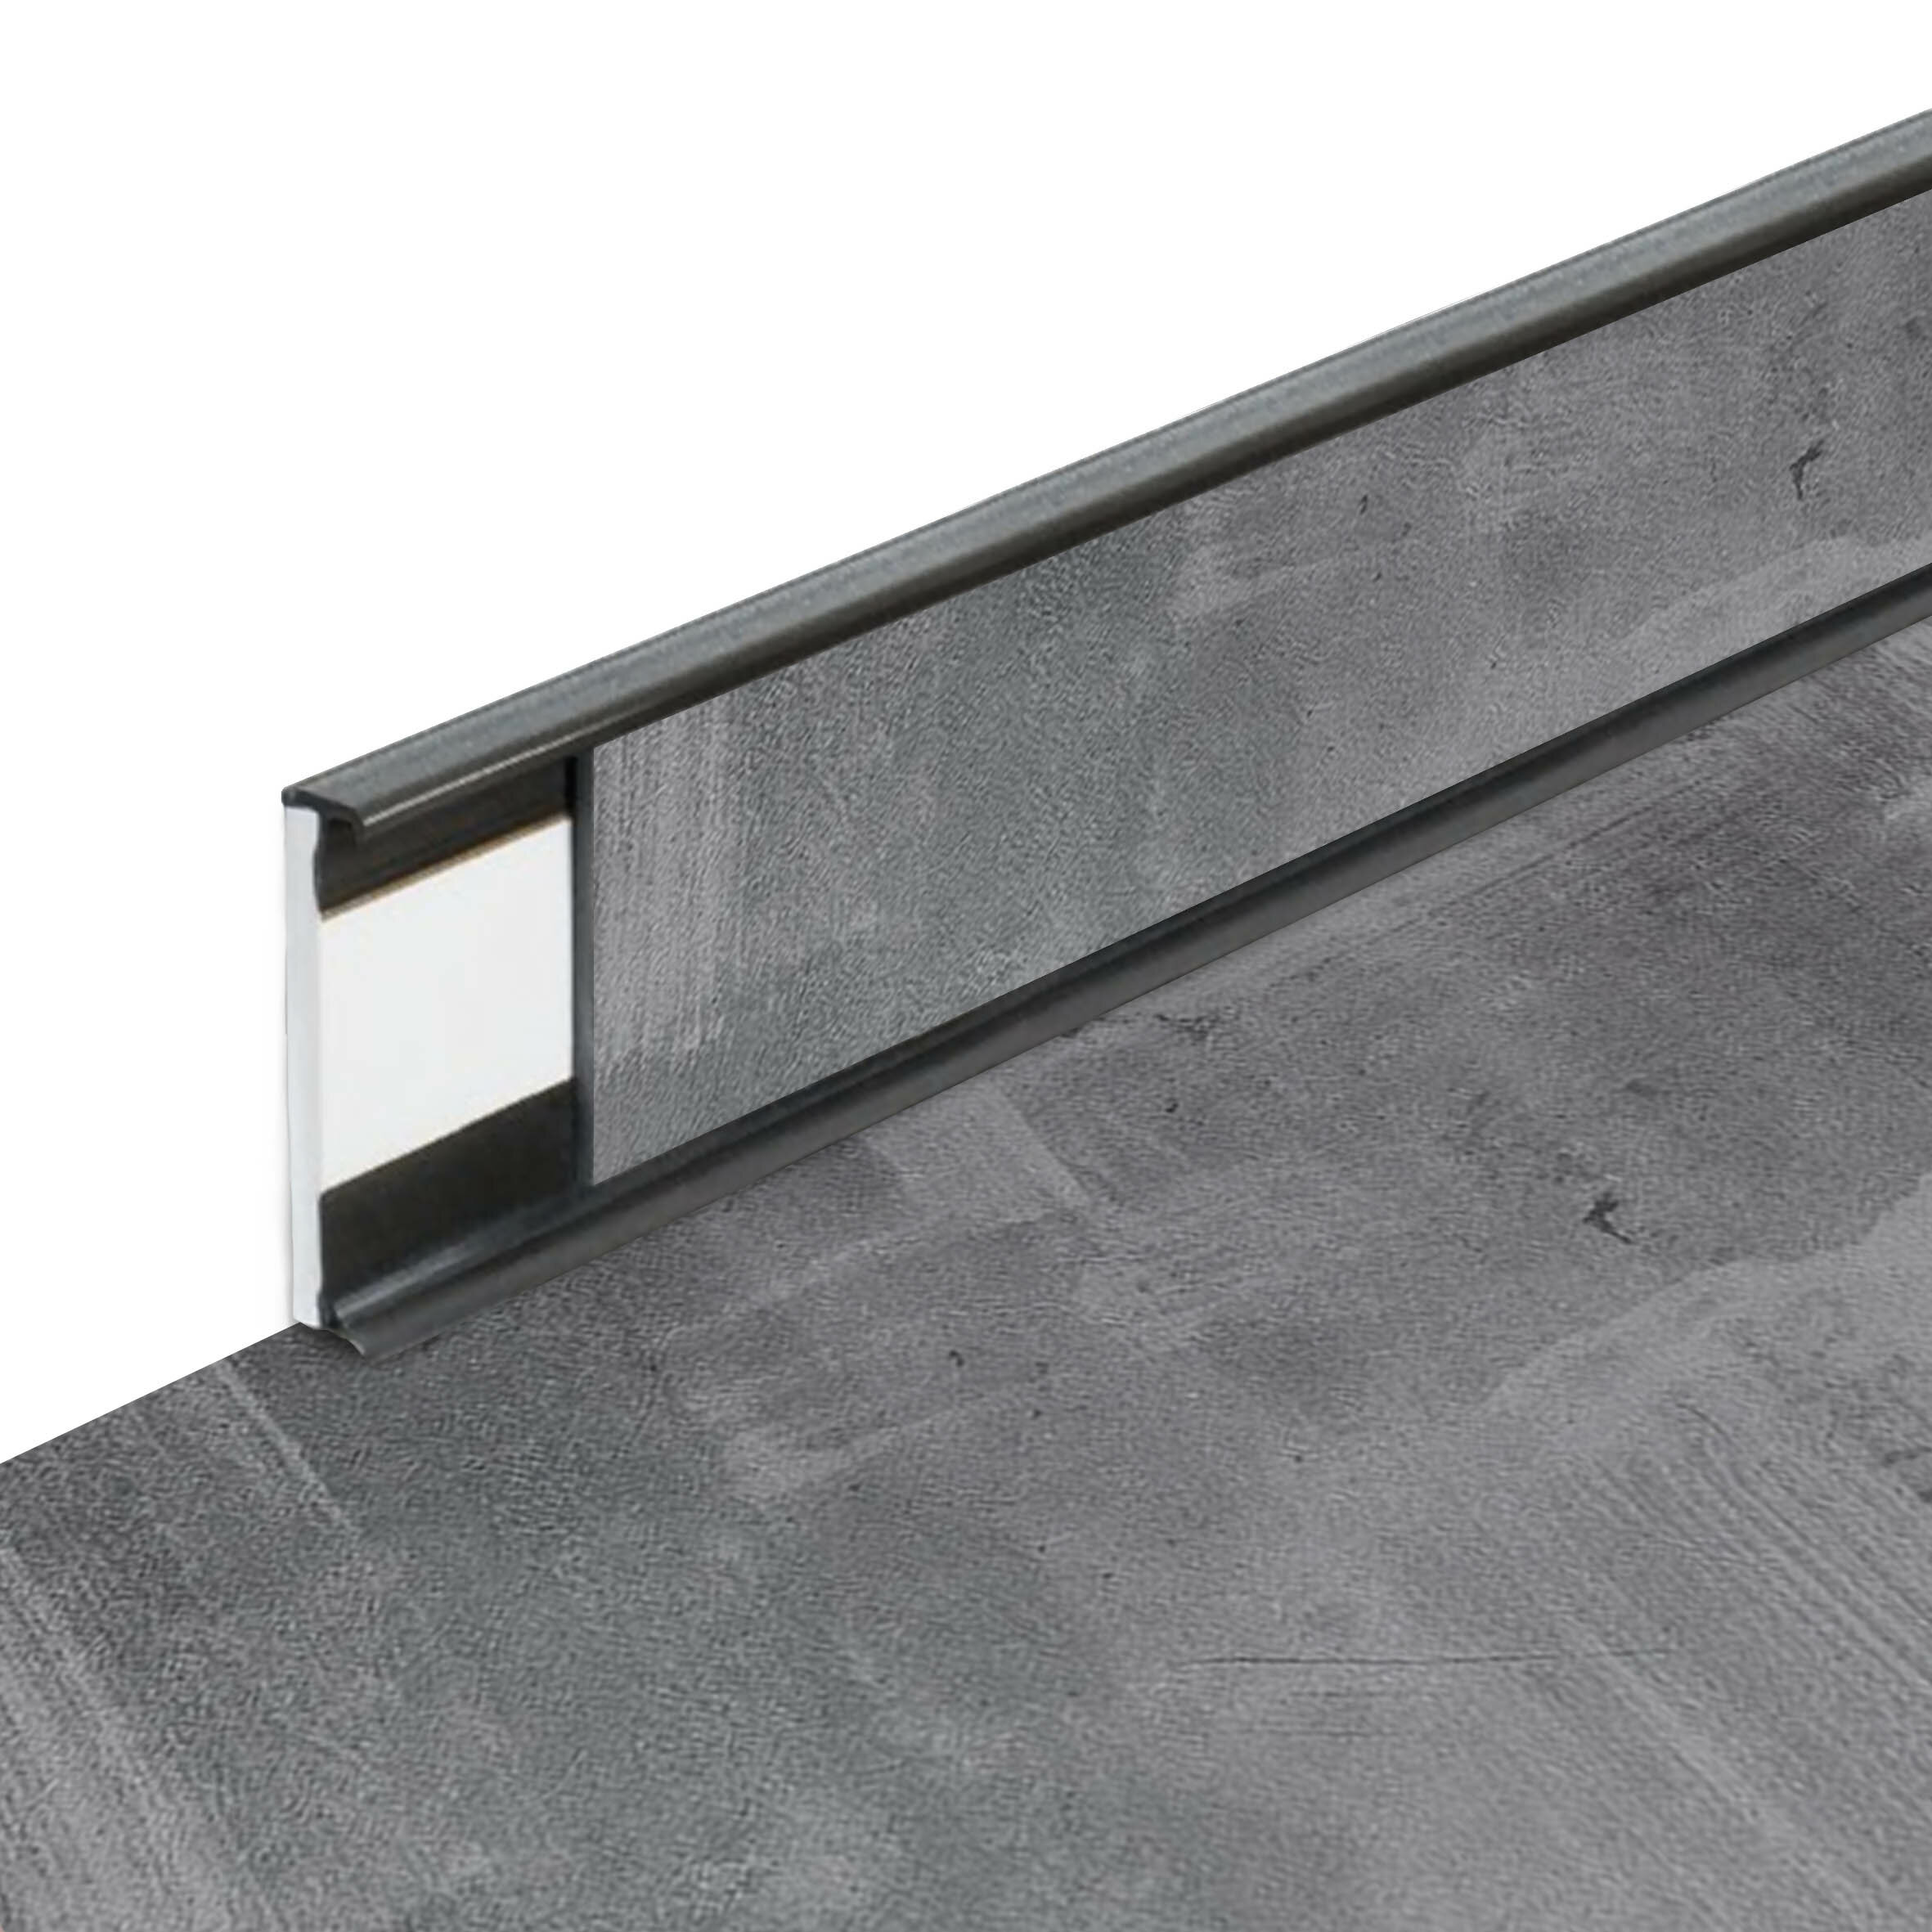 PVC vinylová soklová podlahová lišta Fortelock Business Viken Ghost Buster C004 Graphite - dĺžka 200 cm, výška 5,8 cm, hrúbka 1,2 cm